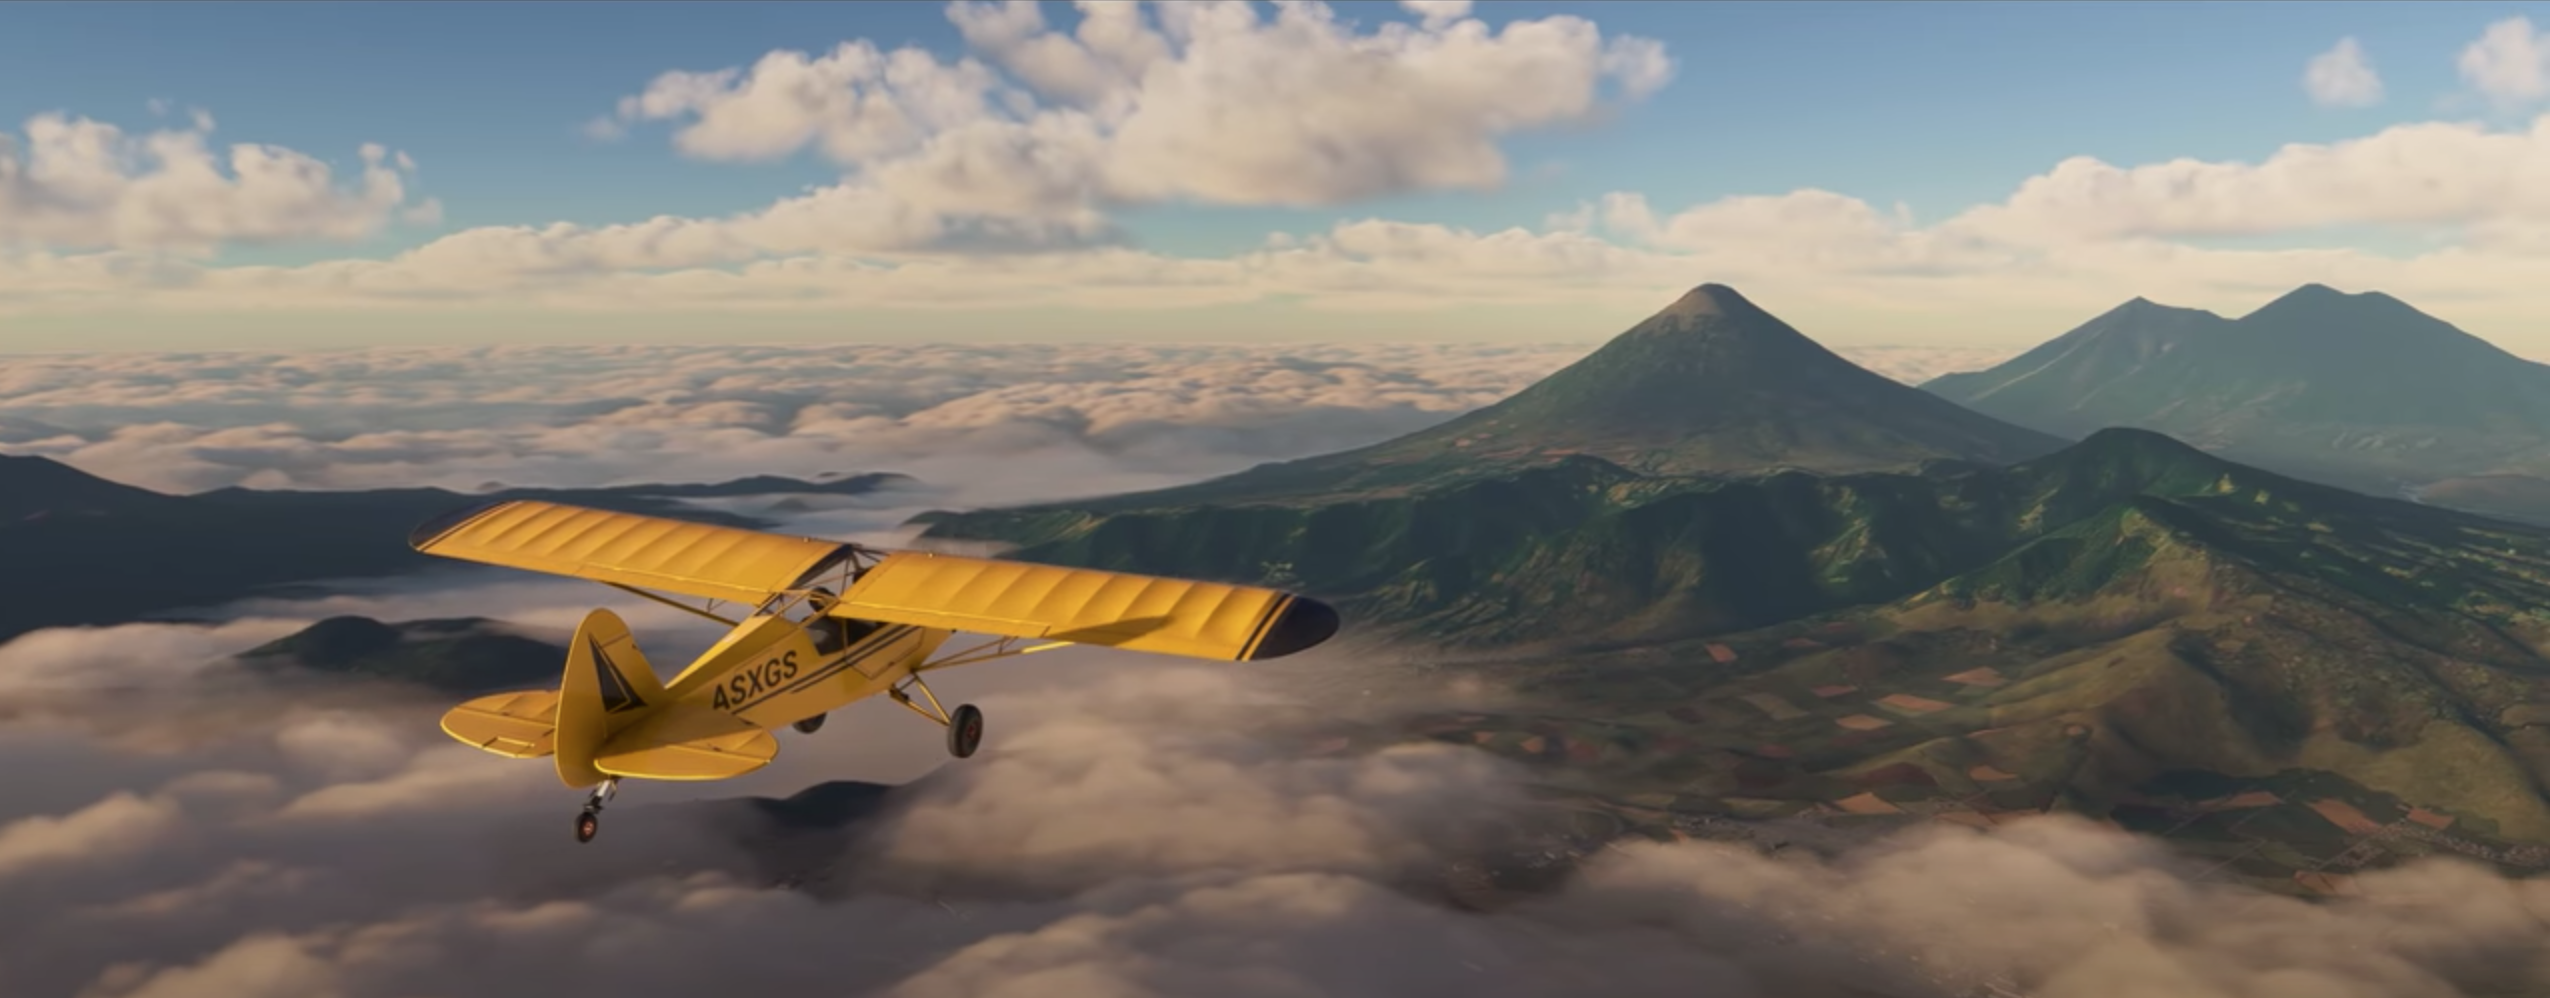 Microsoft Mengumumkan Flight Simulator 2020 Untuk Konsol Next Gen dengan Trailer Baru